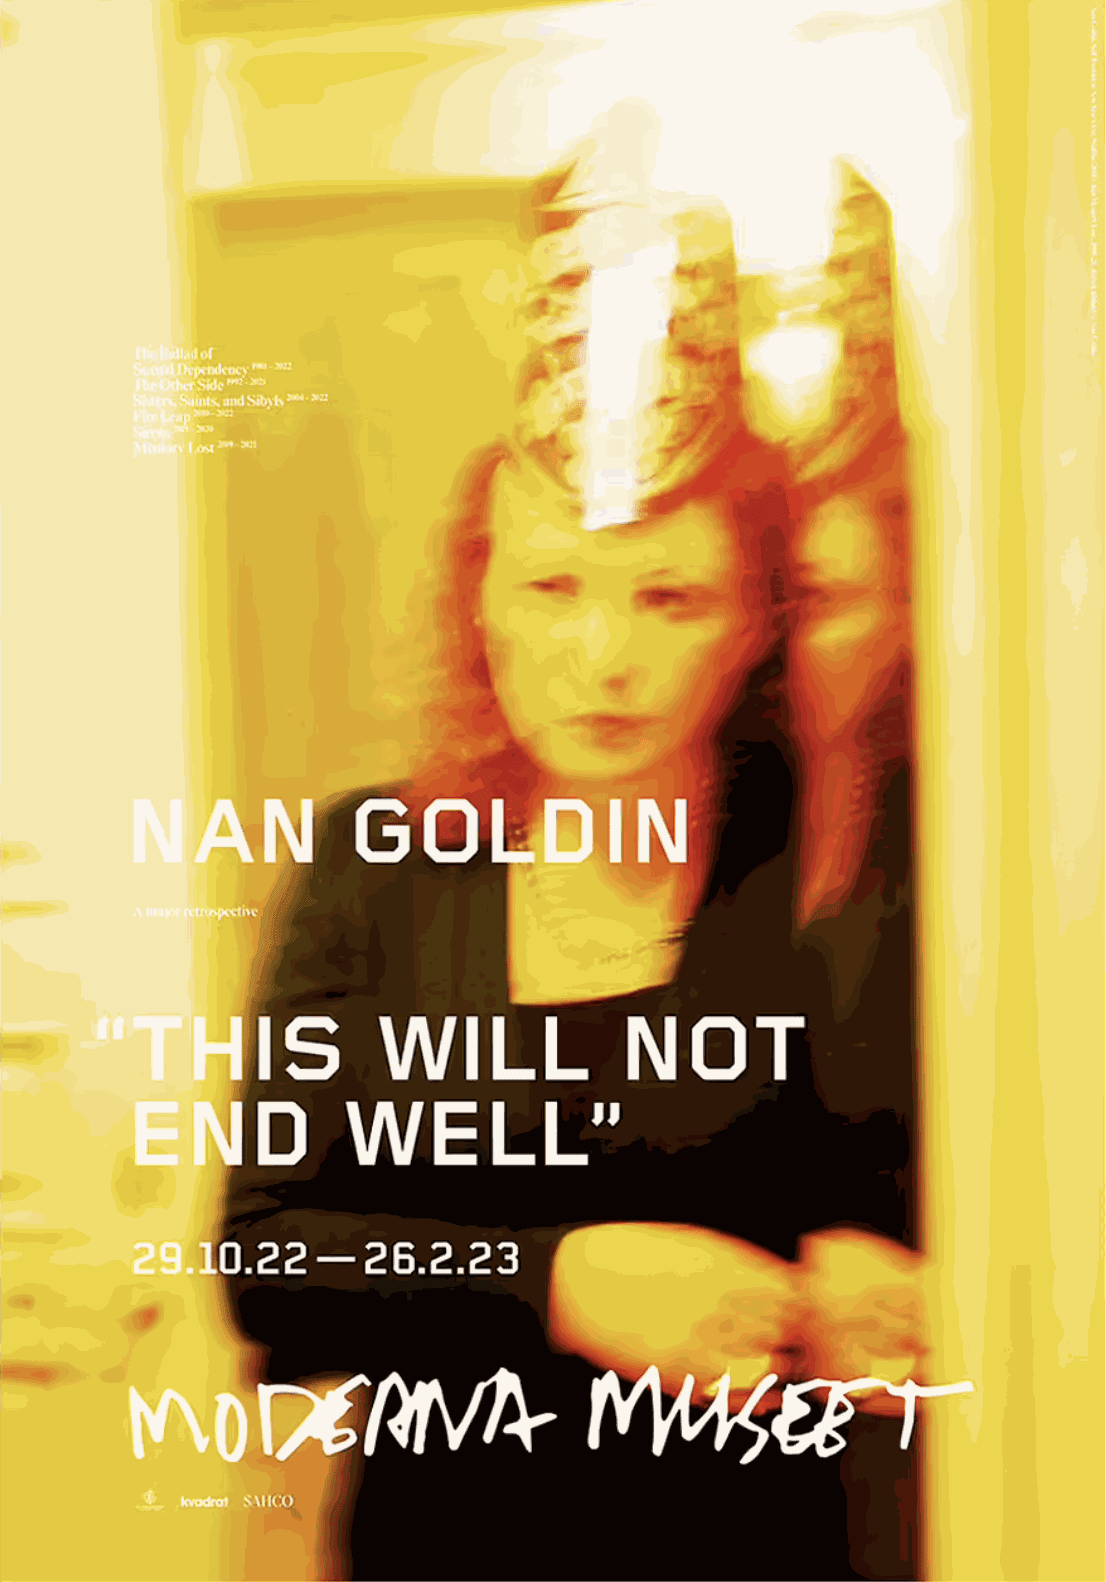 Nan Goldin - Works | 3nd Gallery